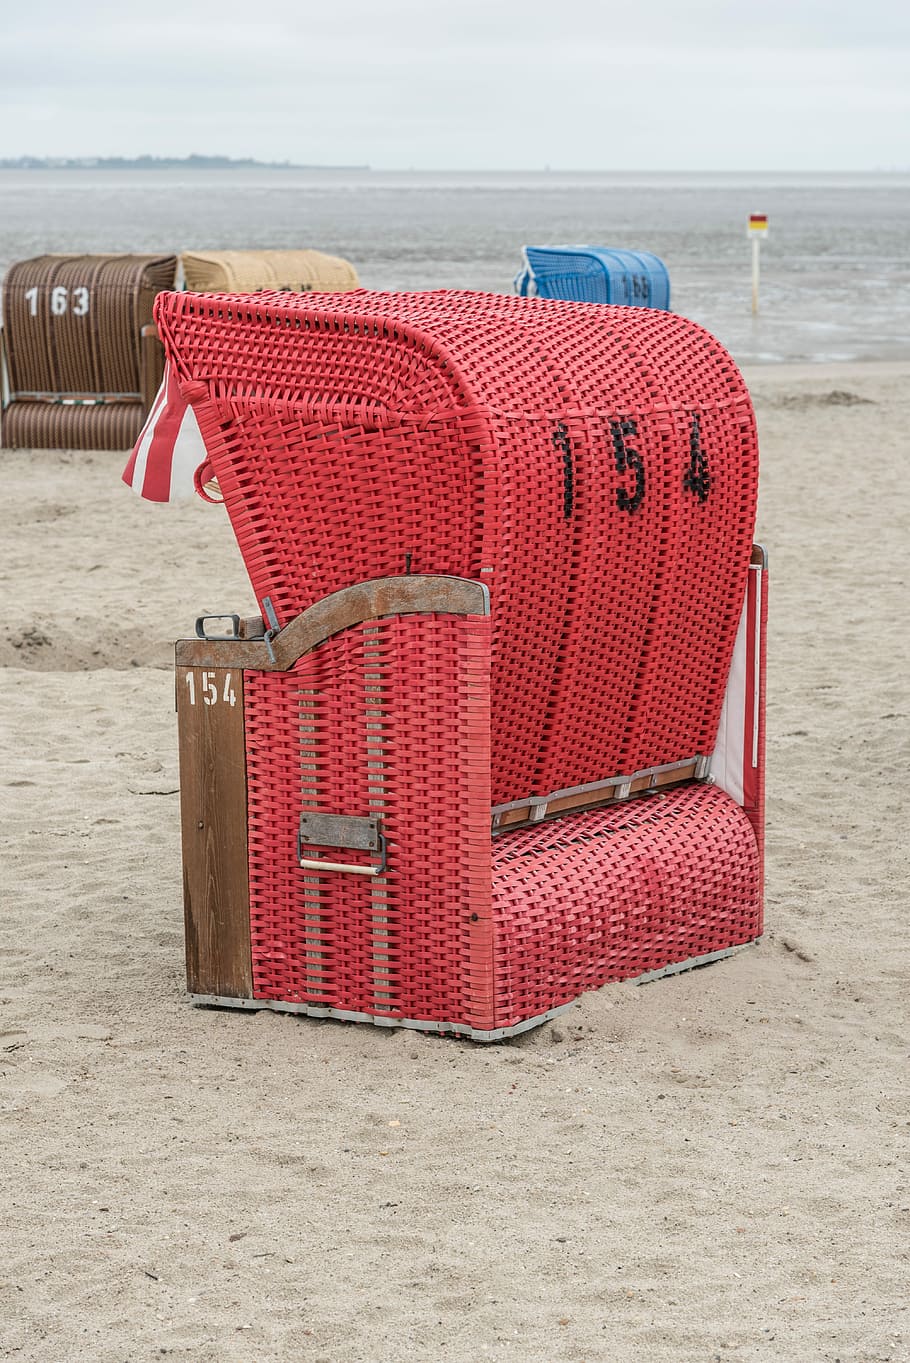 Beach Chair, North Sea, Sea, Beach, beach, wind protection, seagull, holiday, summer, sea, promenade